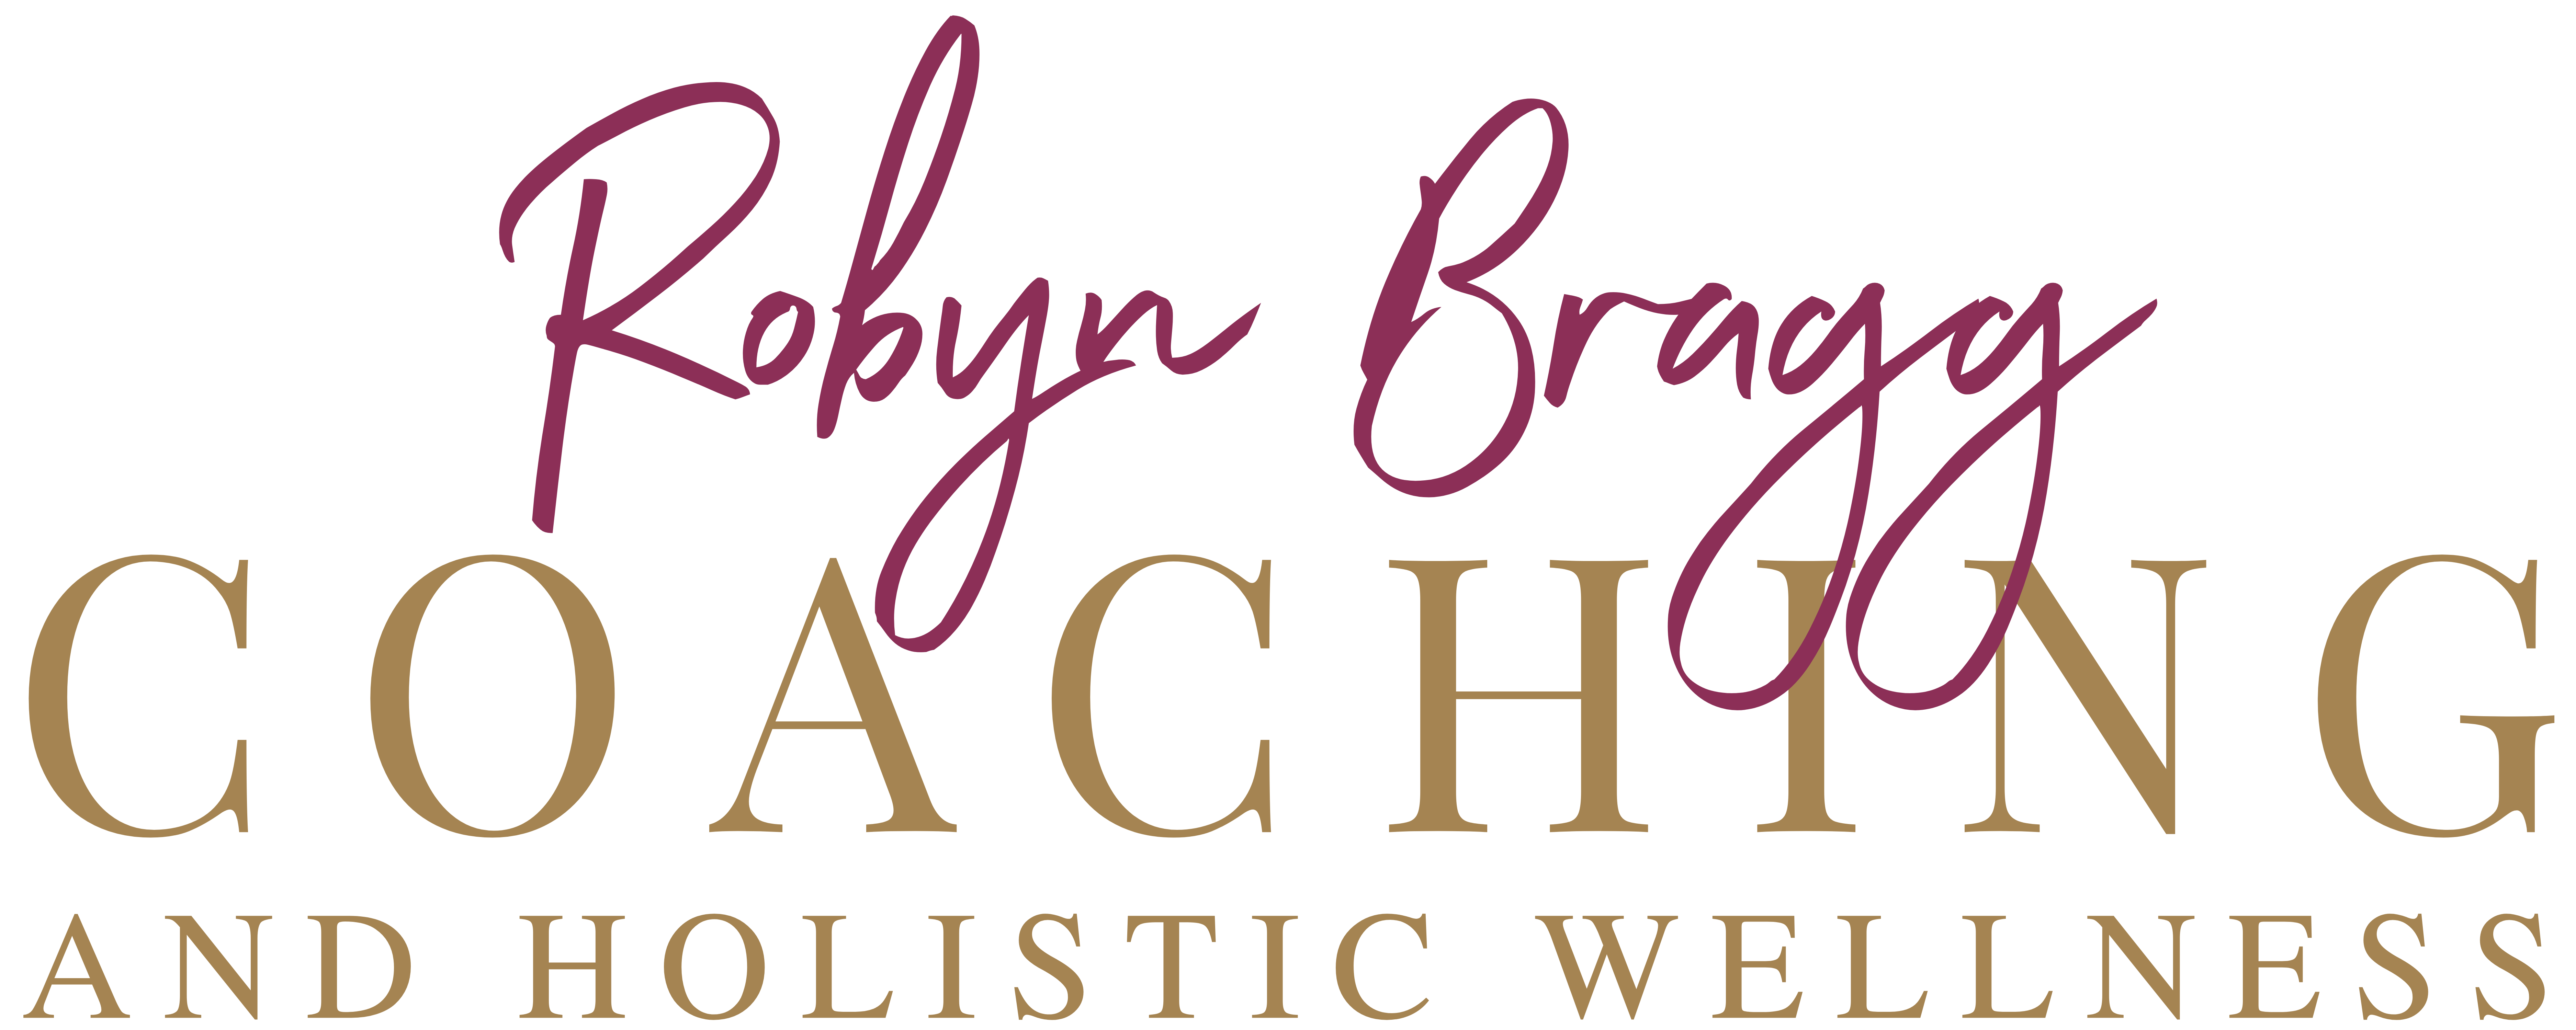 Robyn Bragg Coaching logo